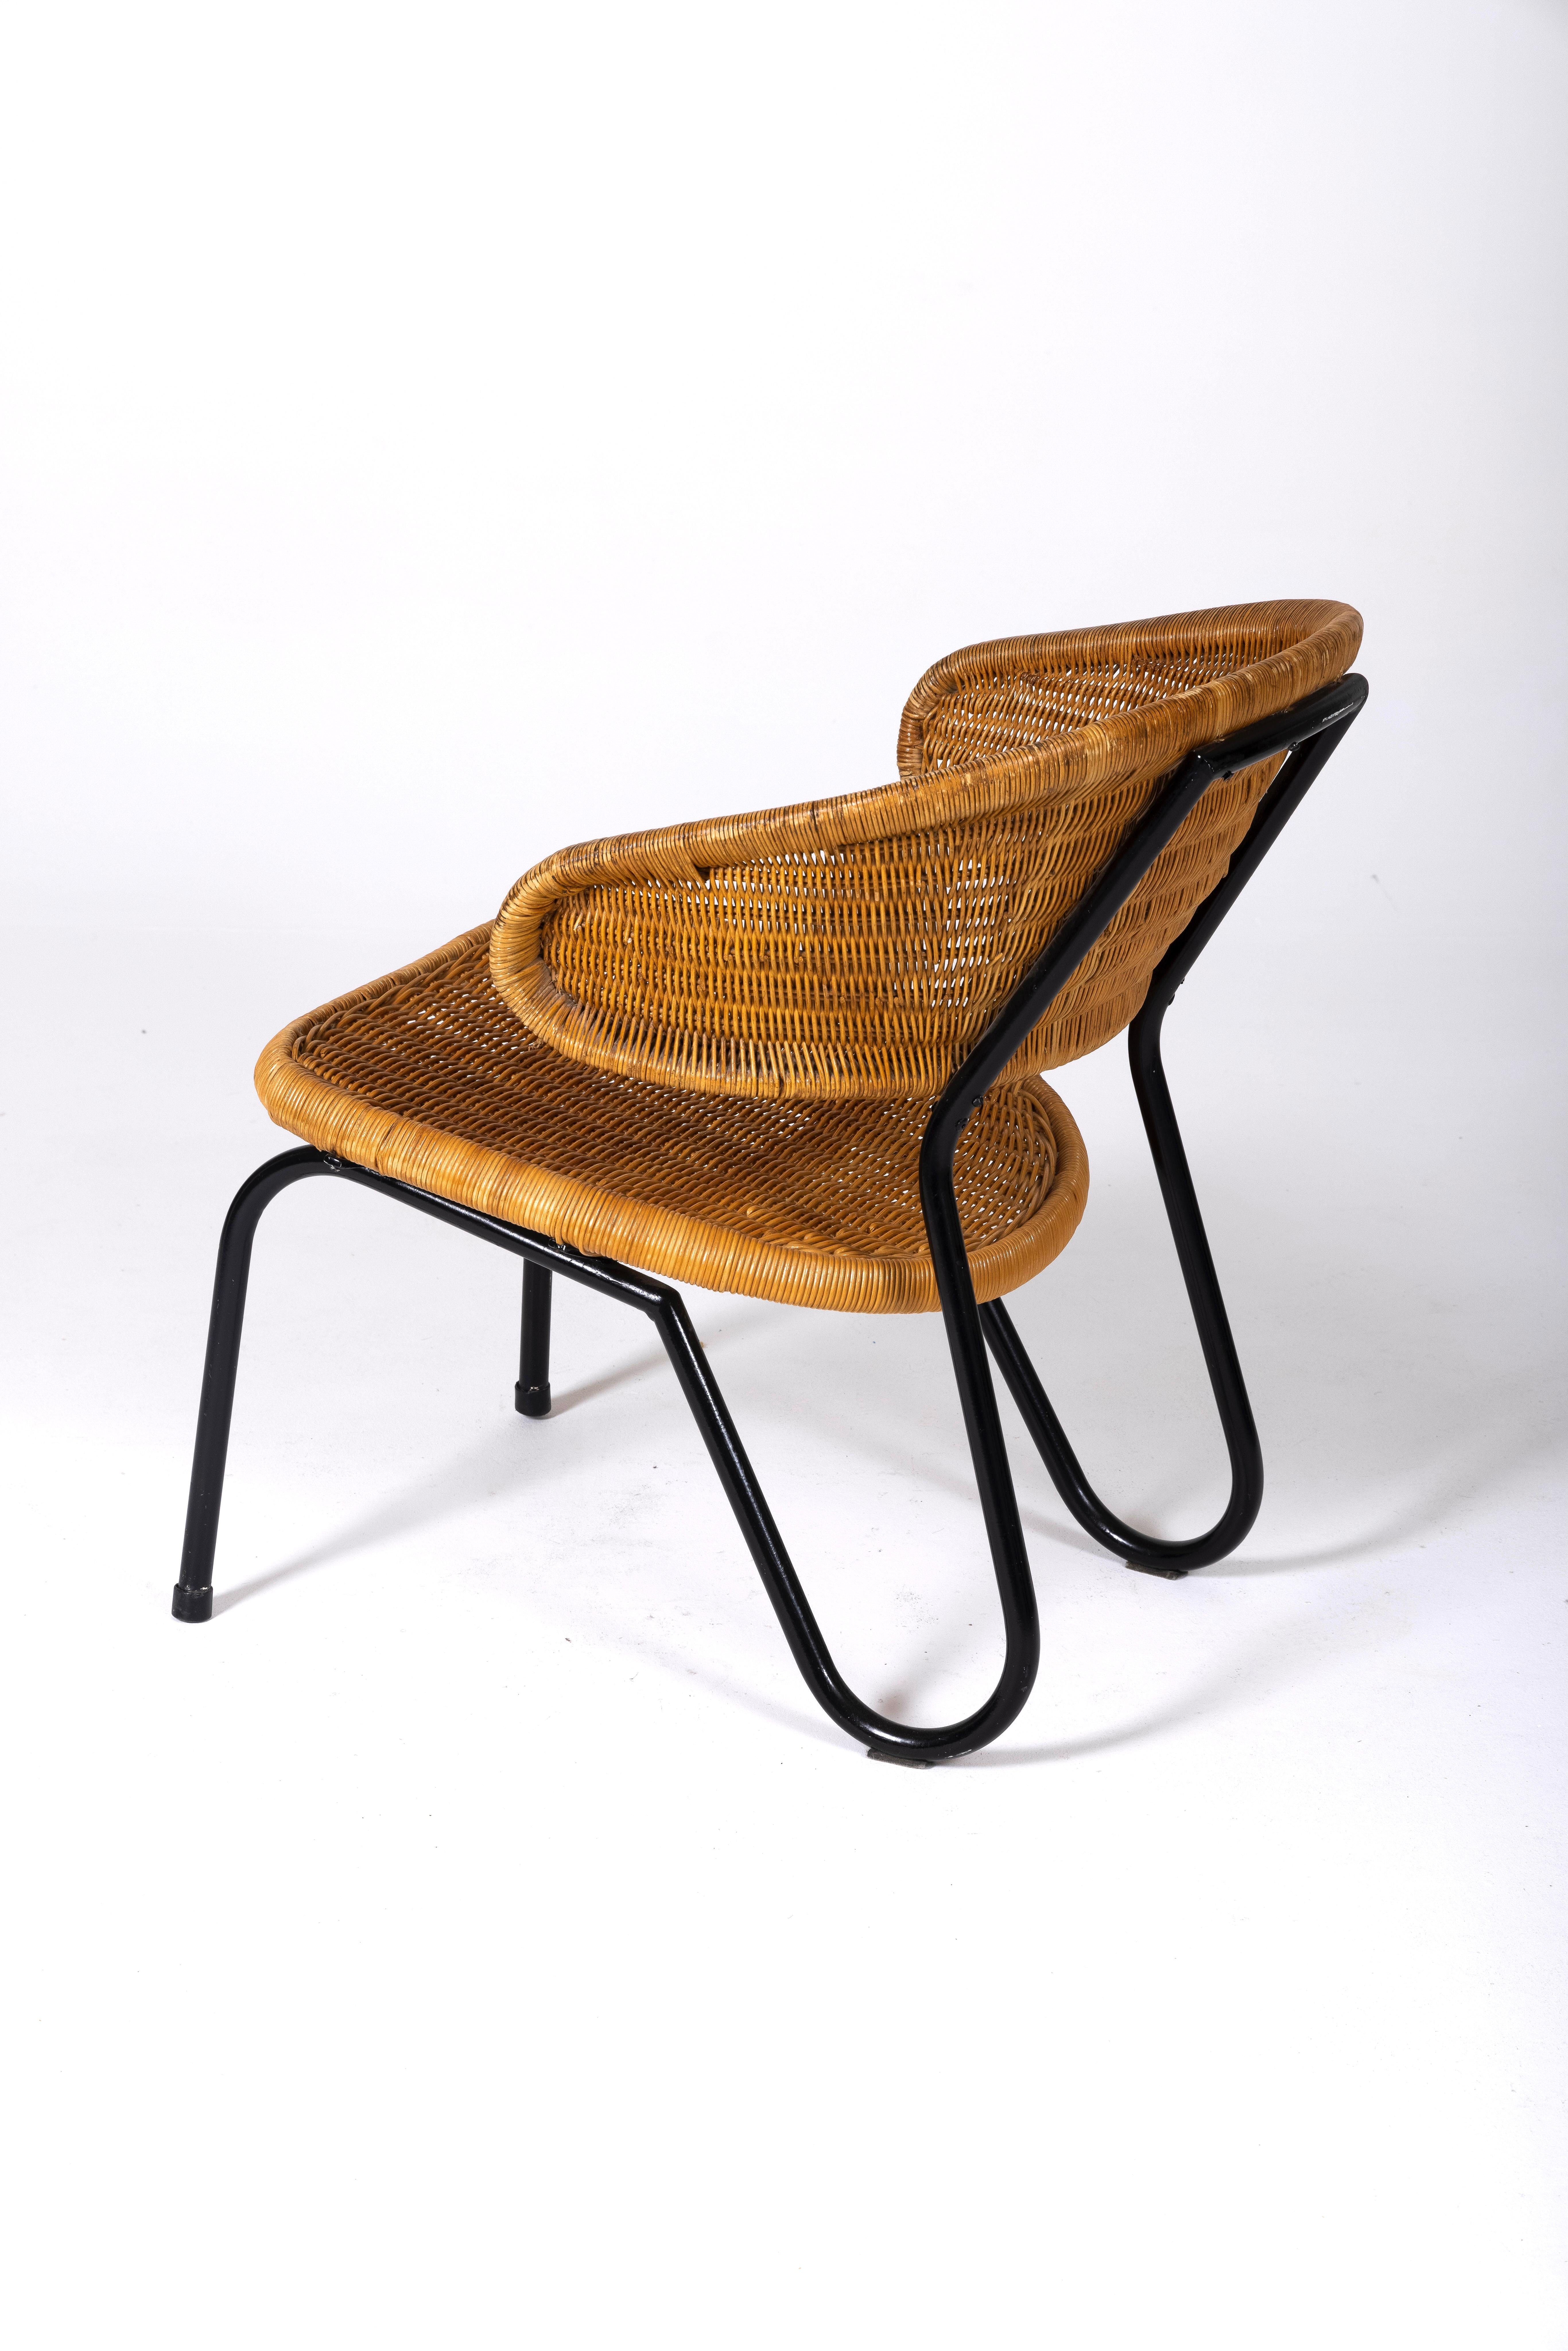 Wooden armchair by Dirk Van Sliedregt. 2